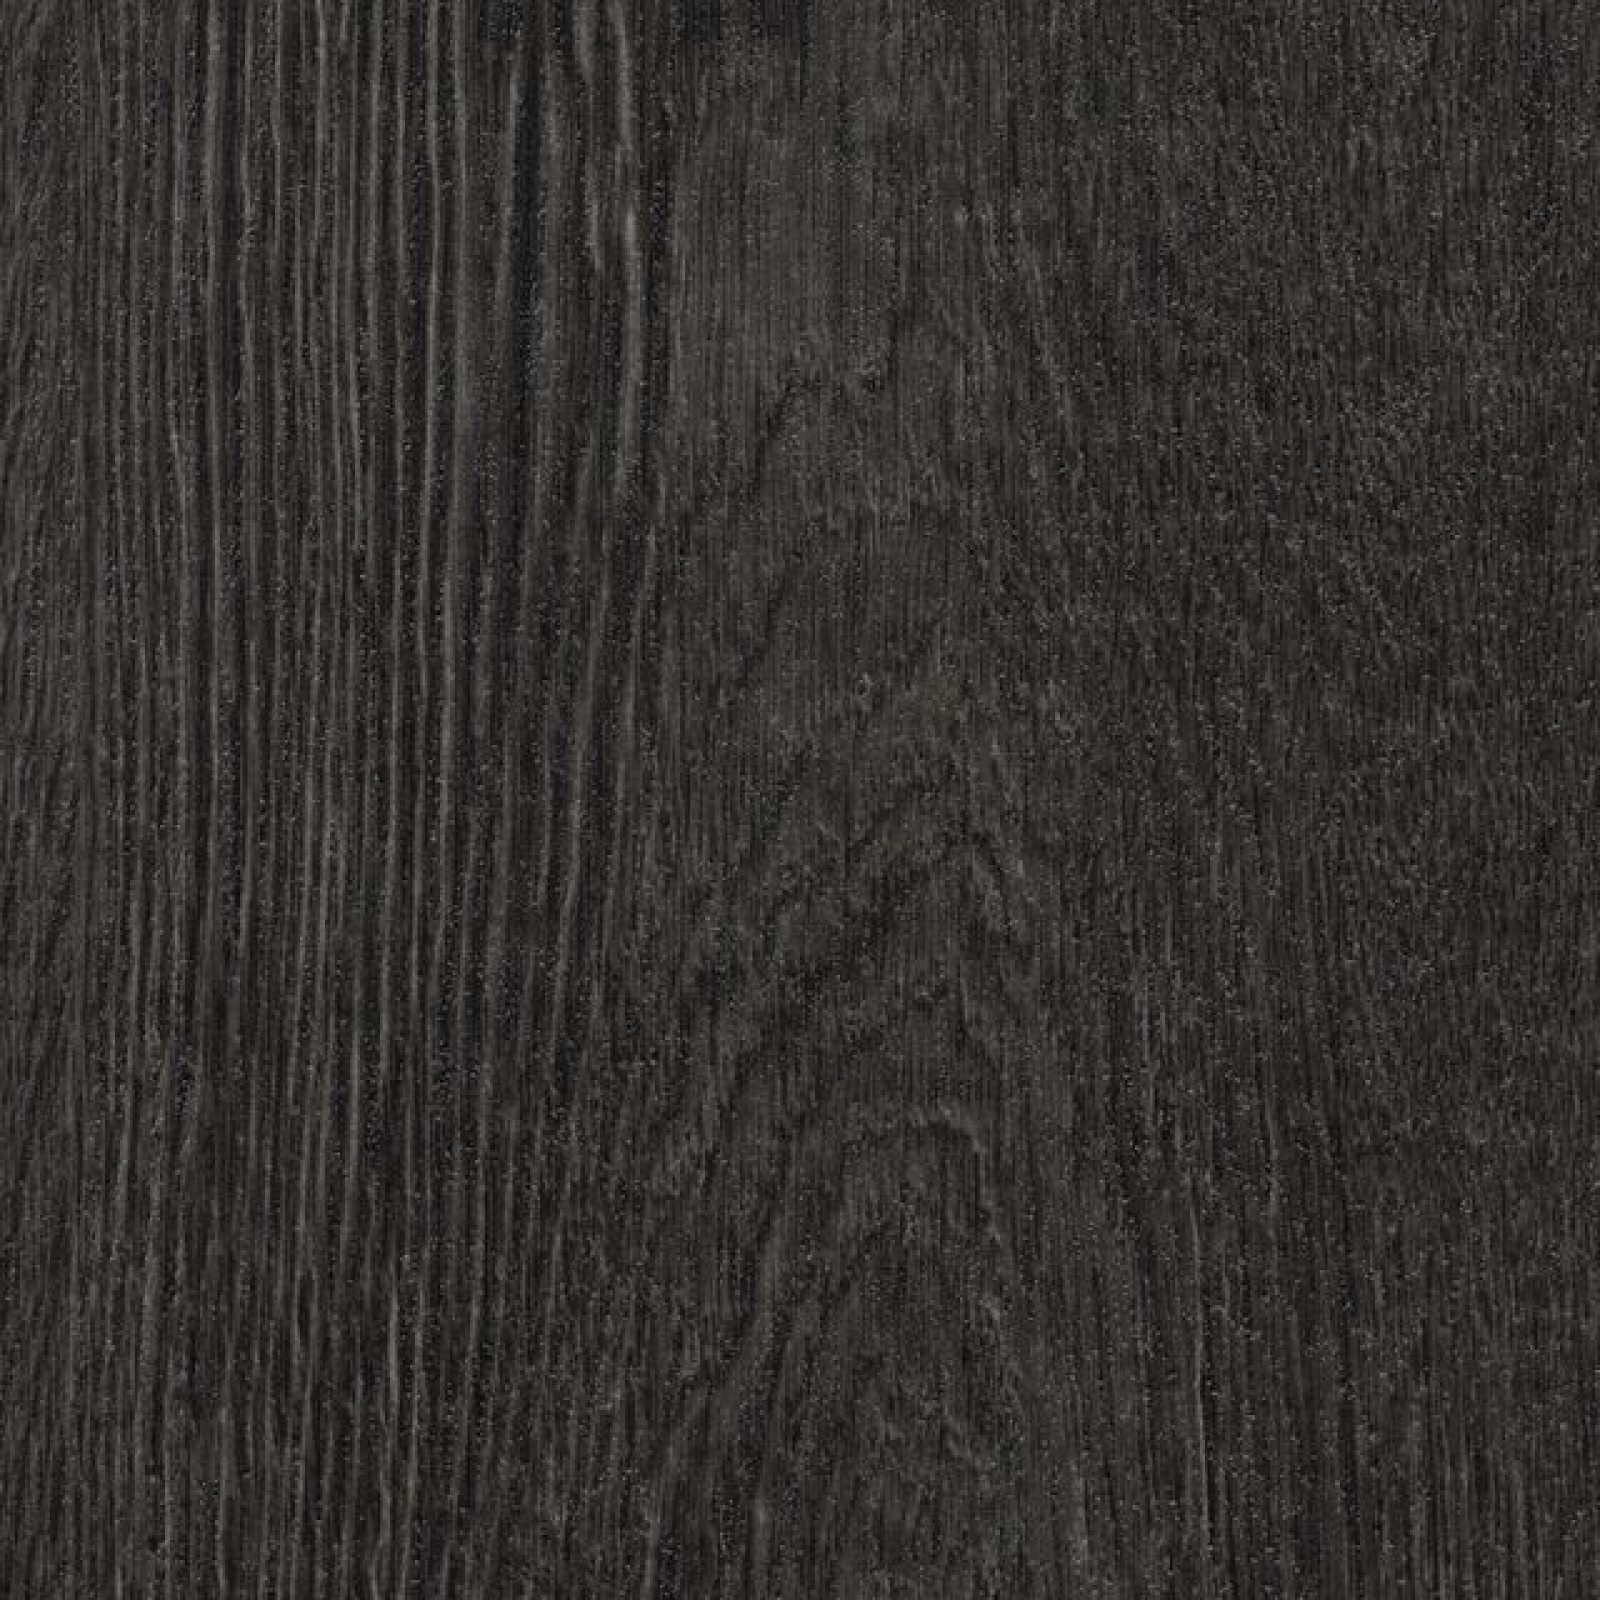 Vzor - 60074FL black rustic oak